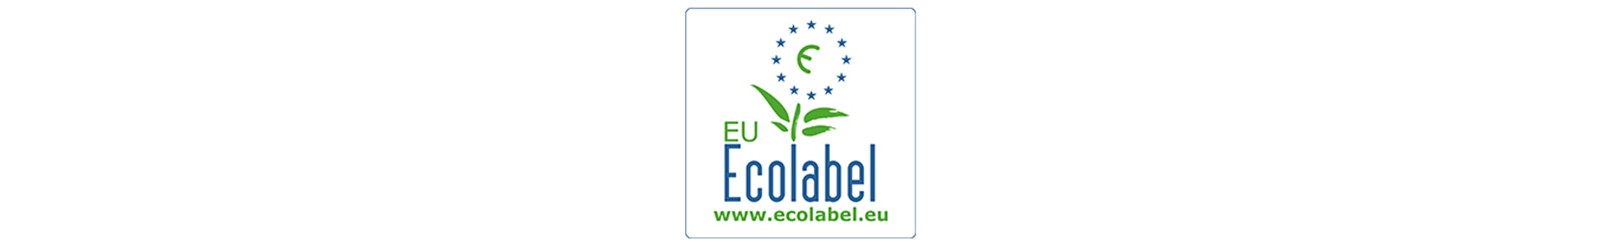 EU eco label